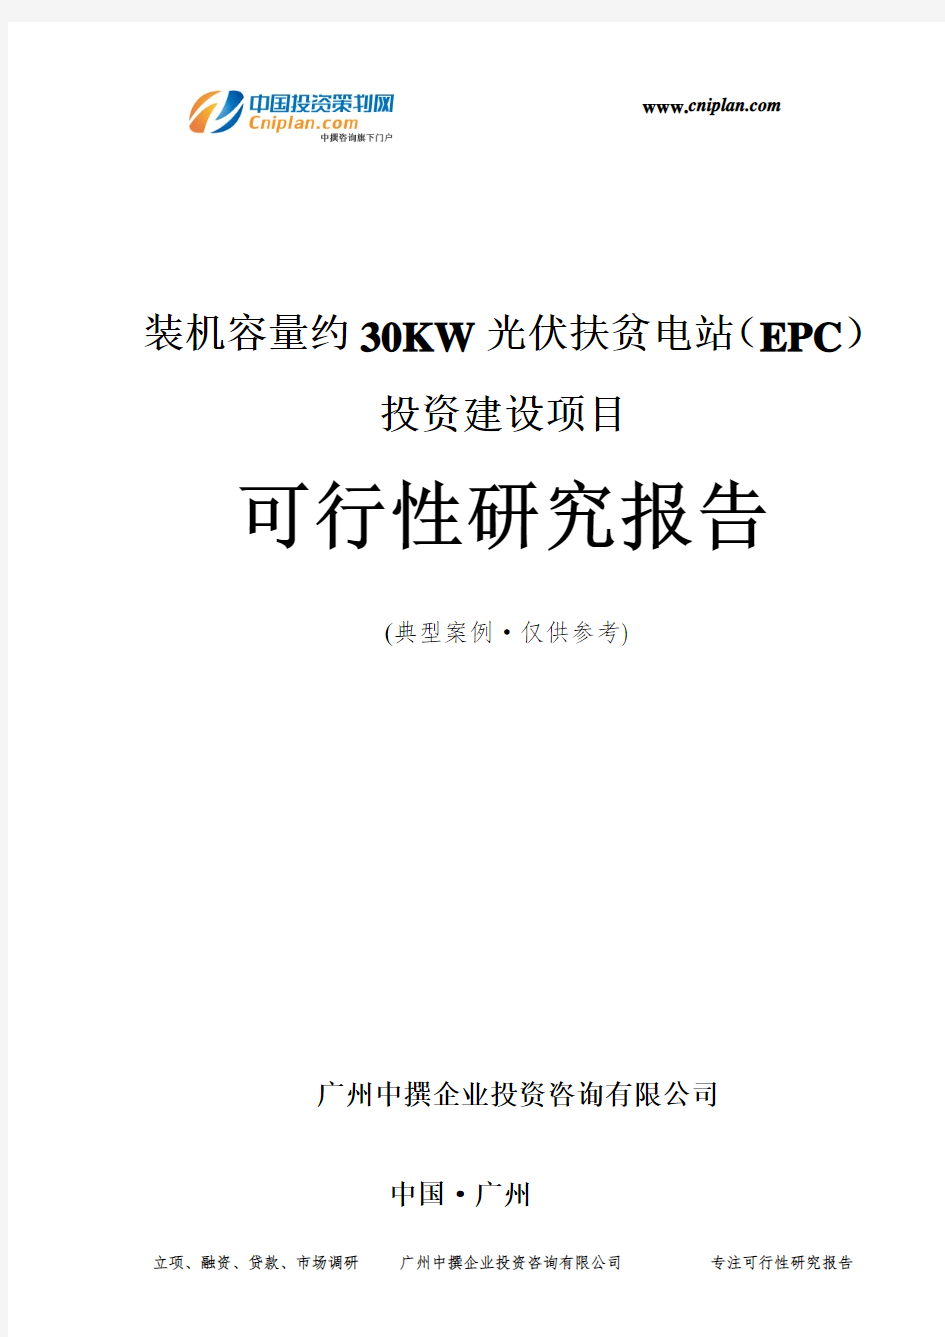 装机容量约30KW光伏扶贫电站(EPC)投资建设项目可行性研究报告-广州中撰咨询